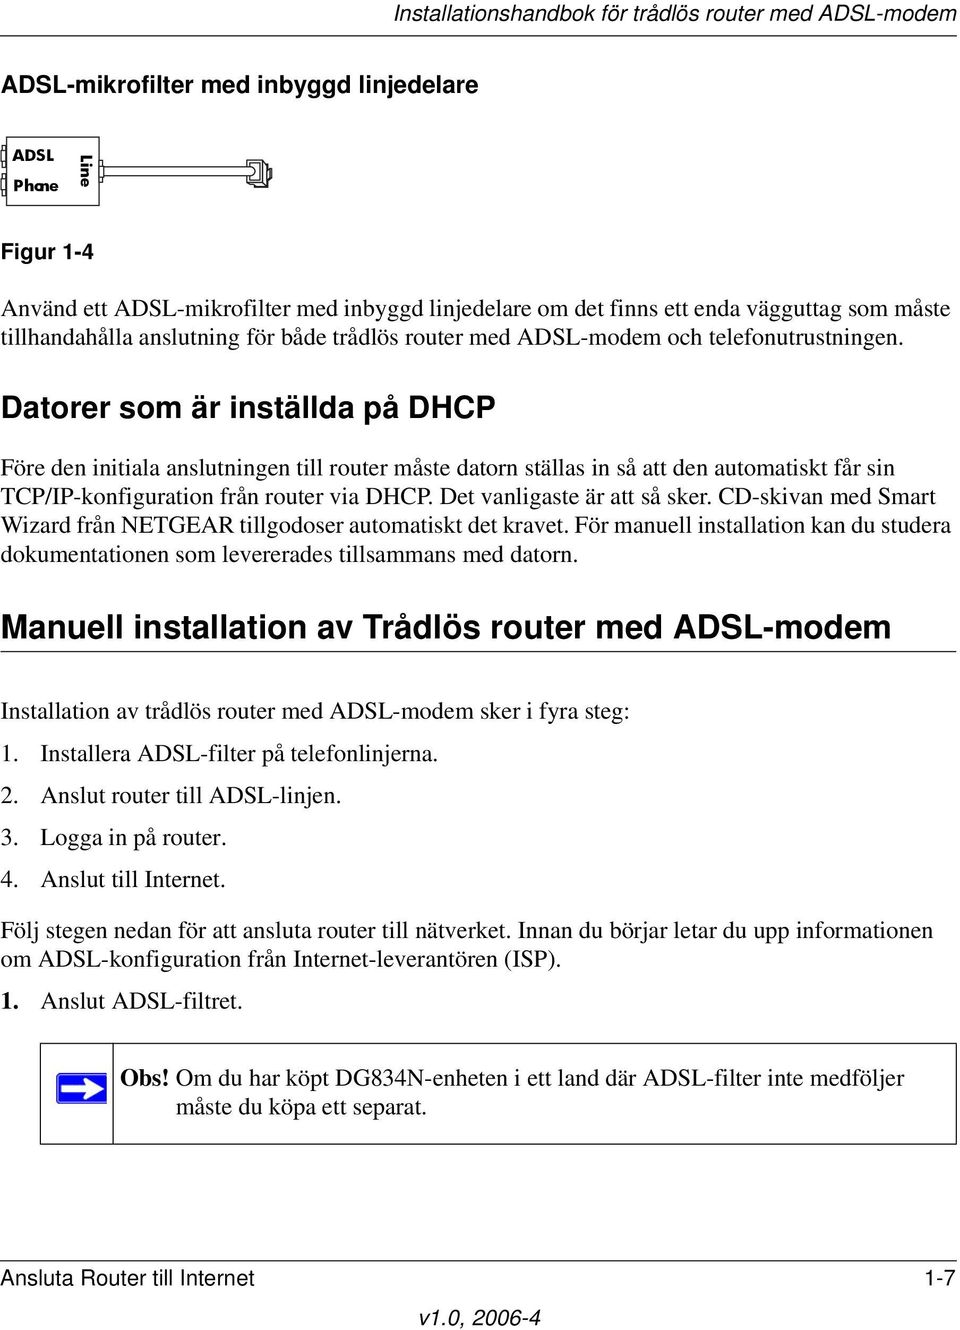 Datorer som är inställda på DHCP Före den initiala anslutningen till router måste datorn ställas in så att den automatiskt får sin TCP/IP-konfiguration från router via DHCP.